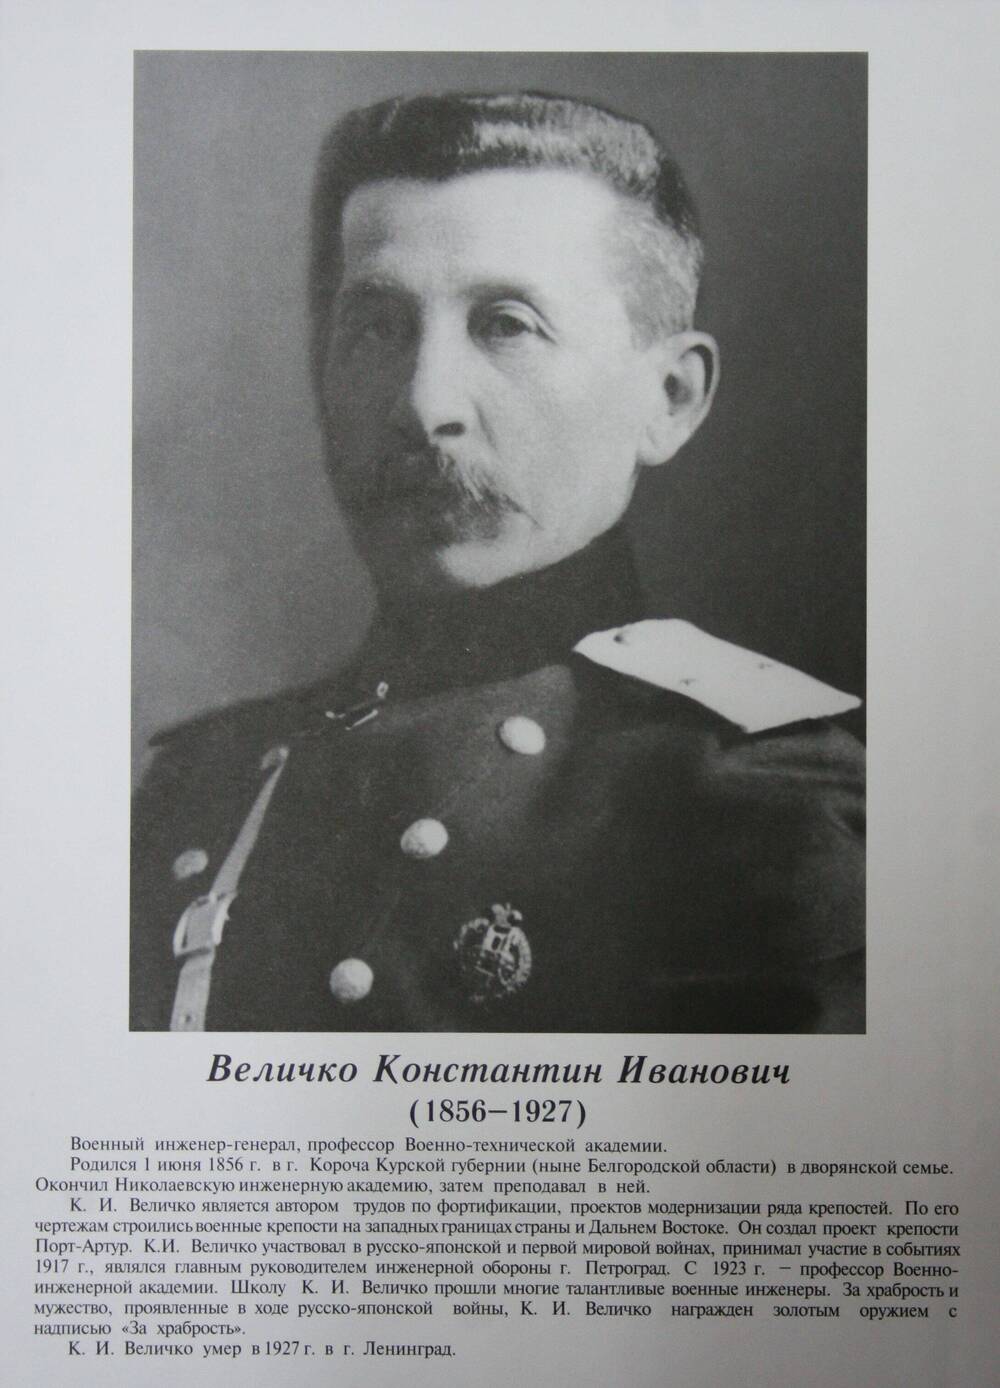 Плакат (фотопортрет) из комплекта Галерея славных имен Белгородчины. Величко Константин Иванович (1856-1927).